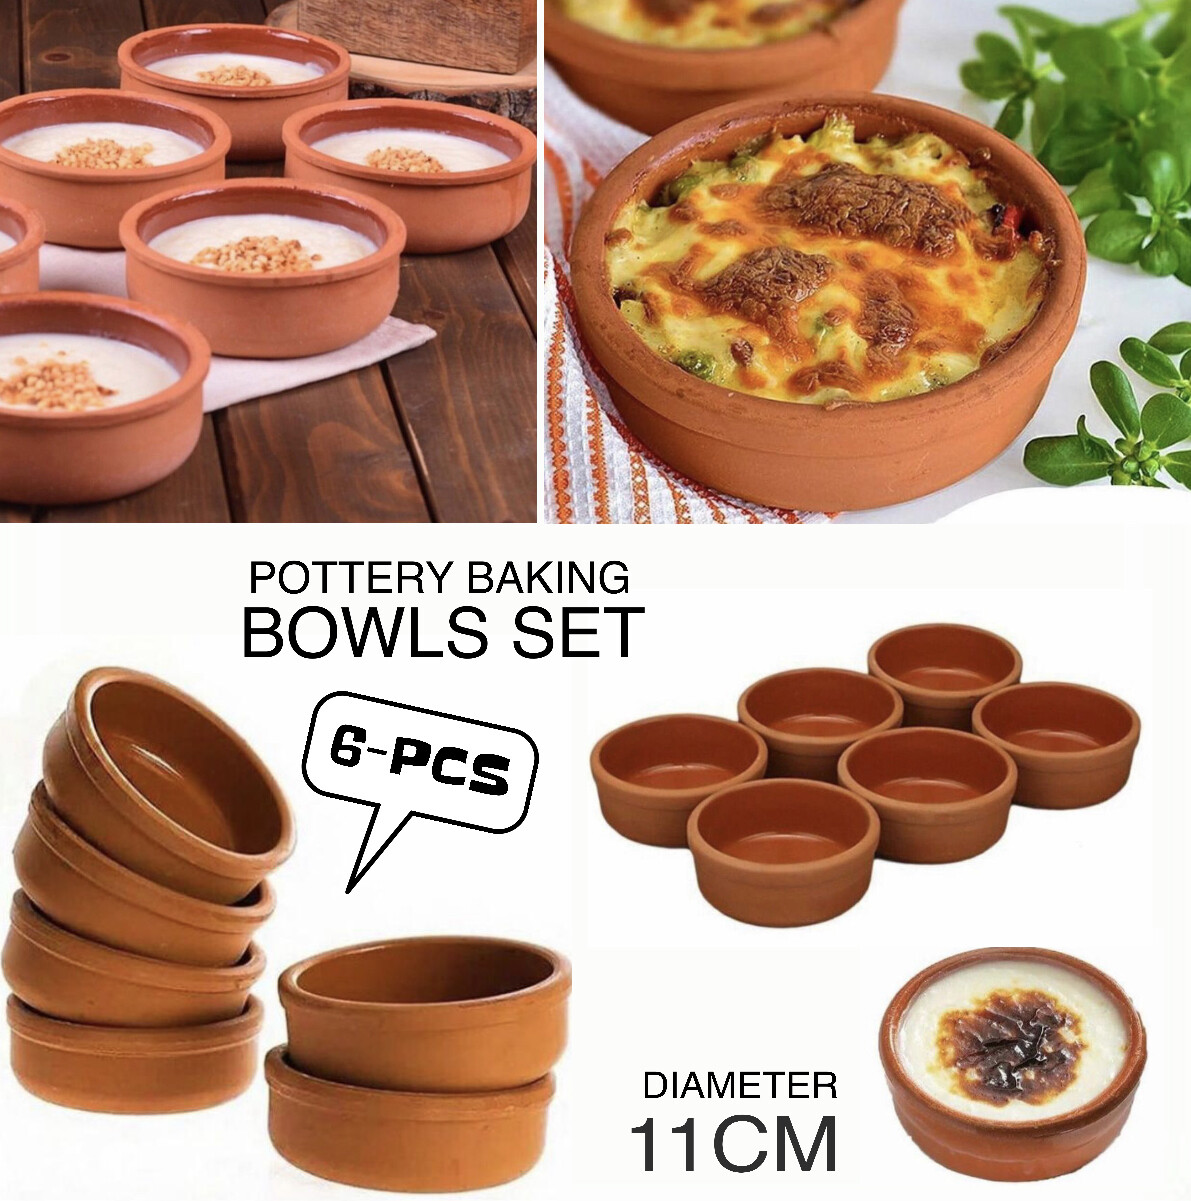 Pottery Baking Bowls